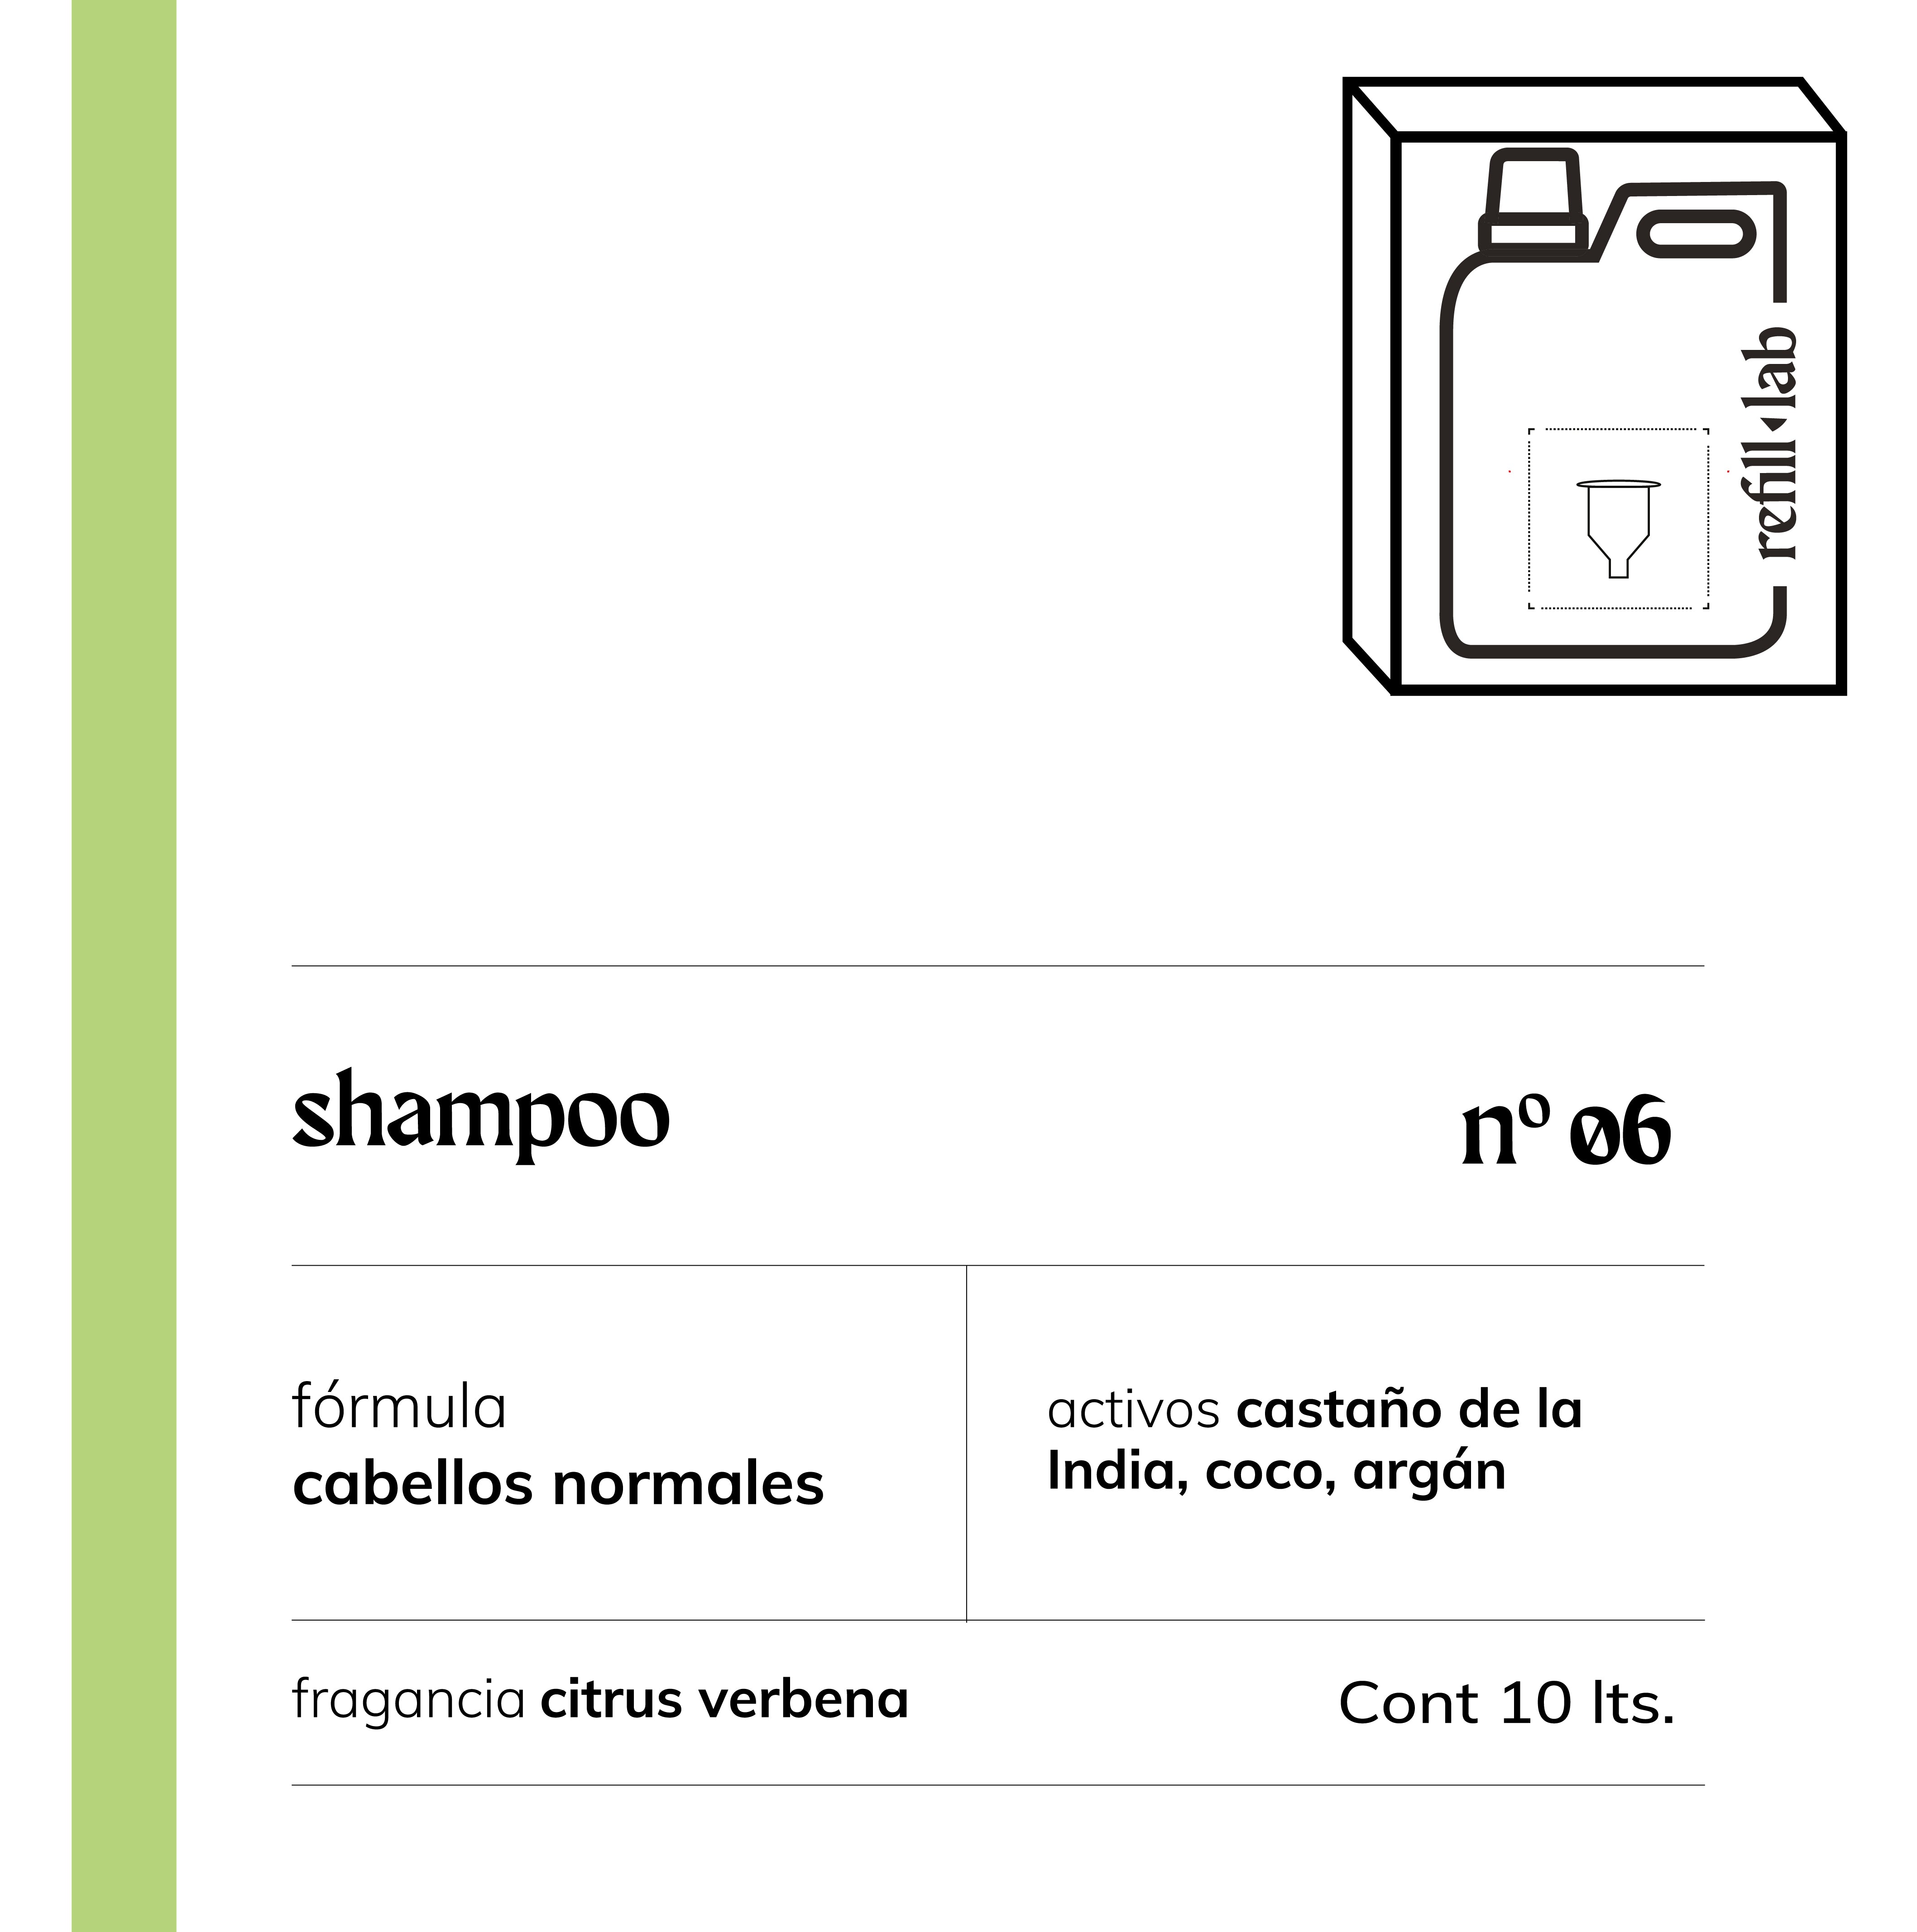 Shampoo sin sulfatos - Cabellos Normales - Citrus Verbena - 10 lts.